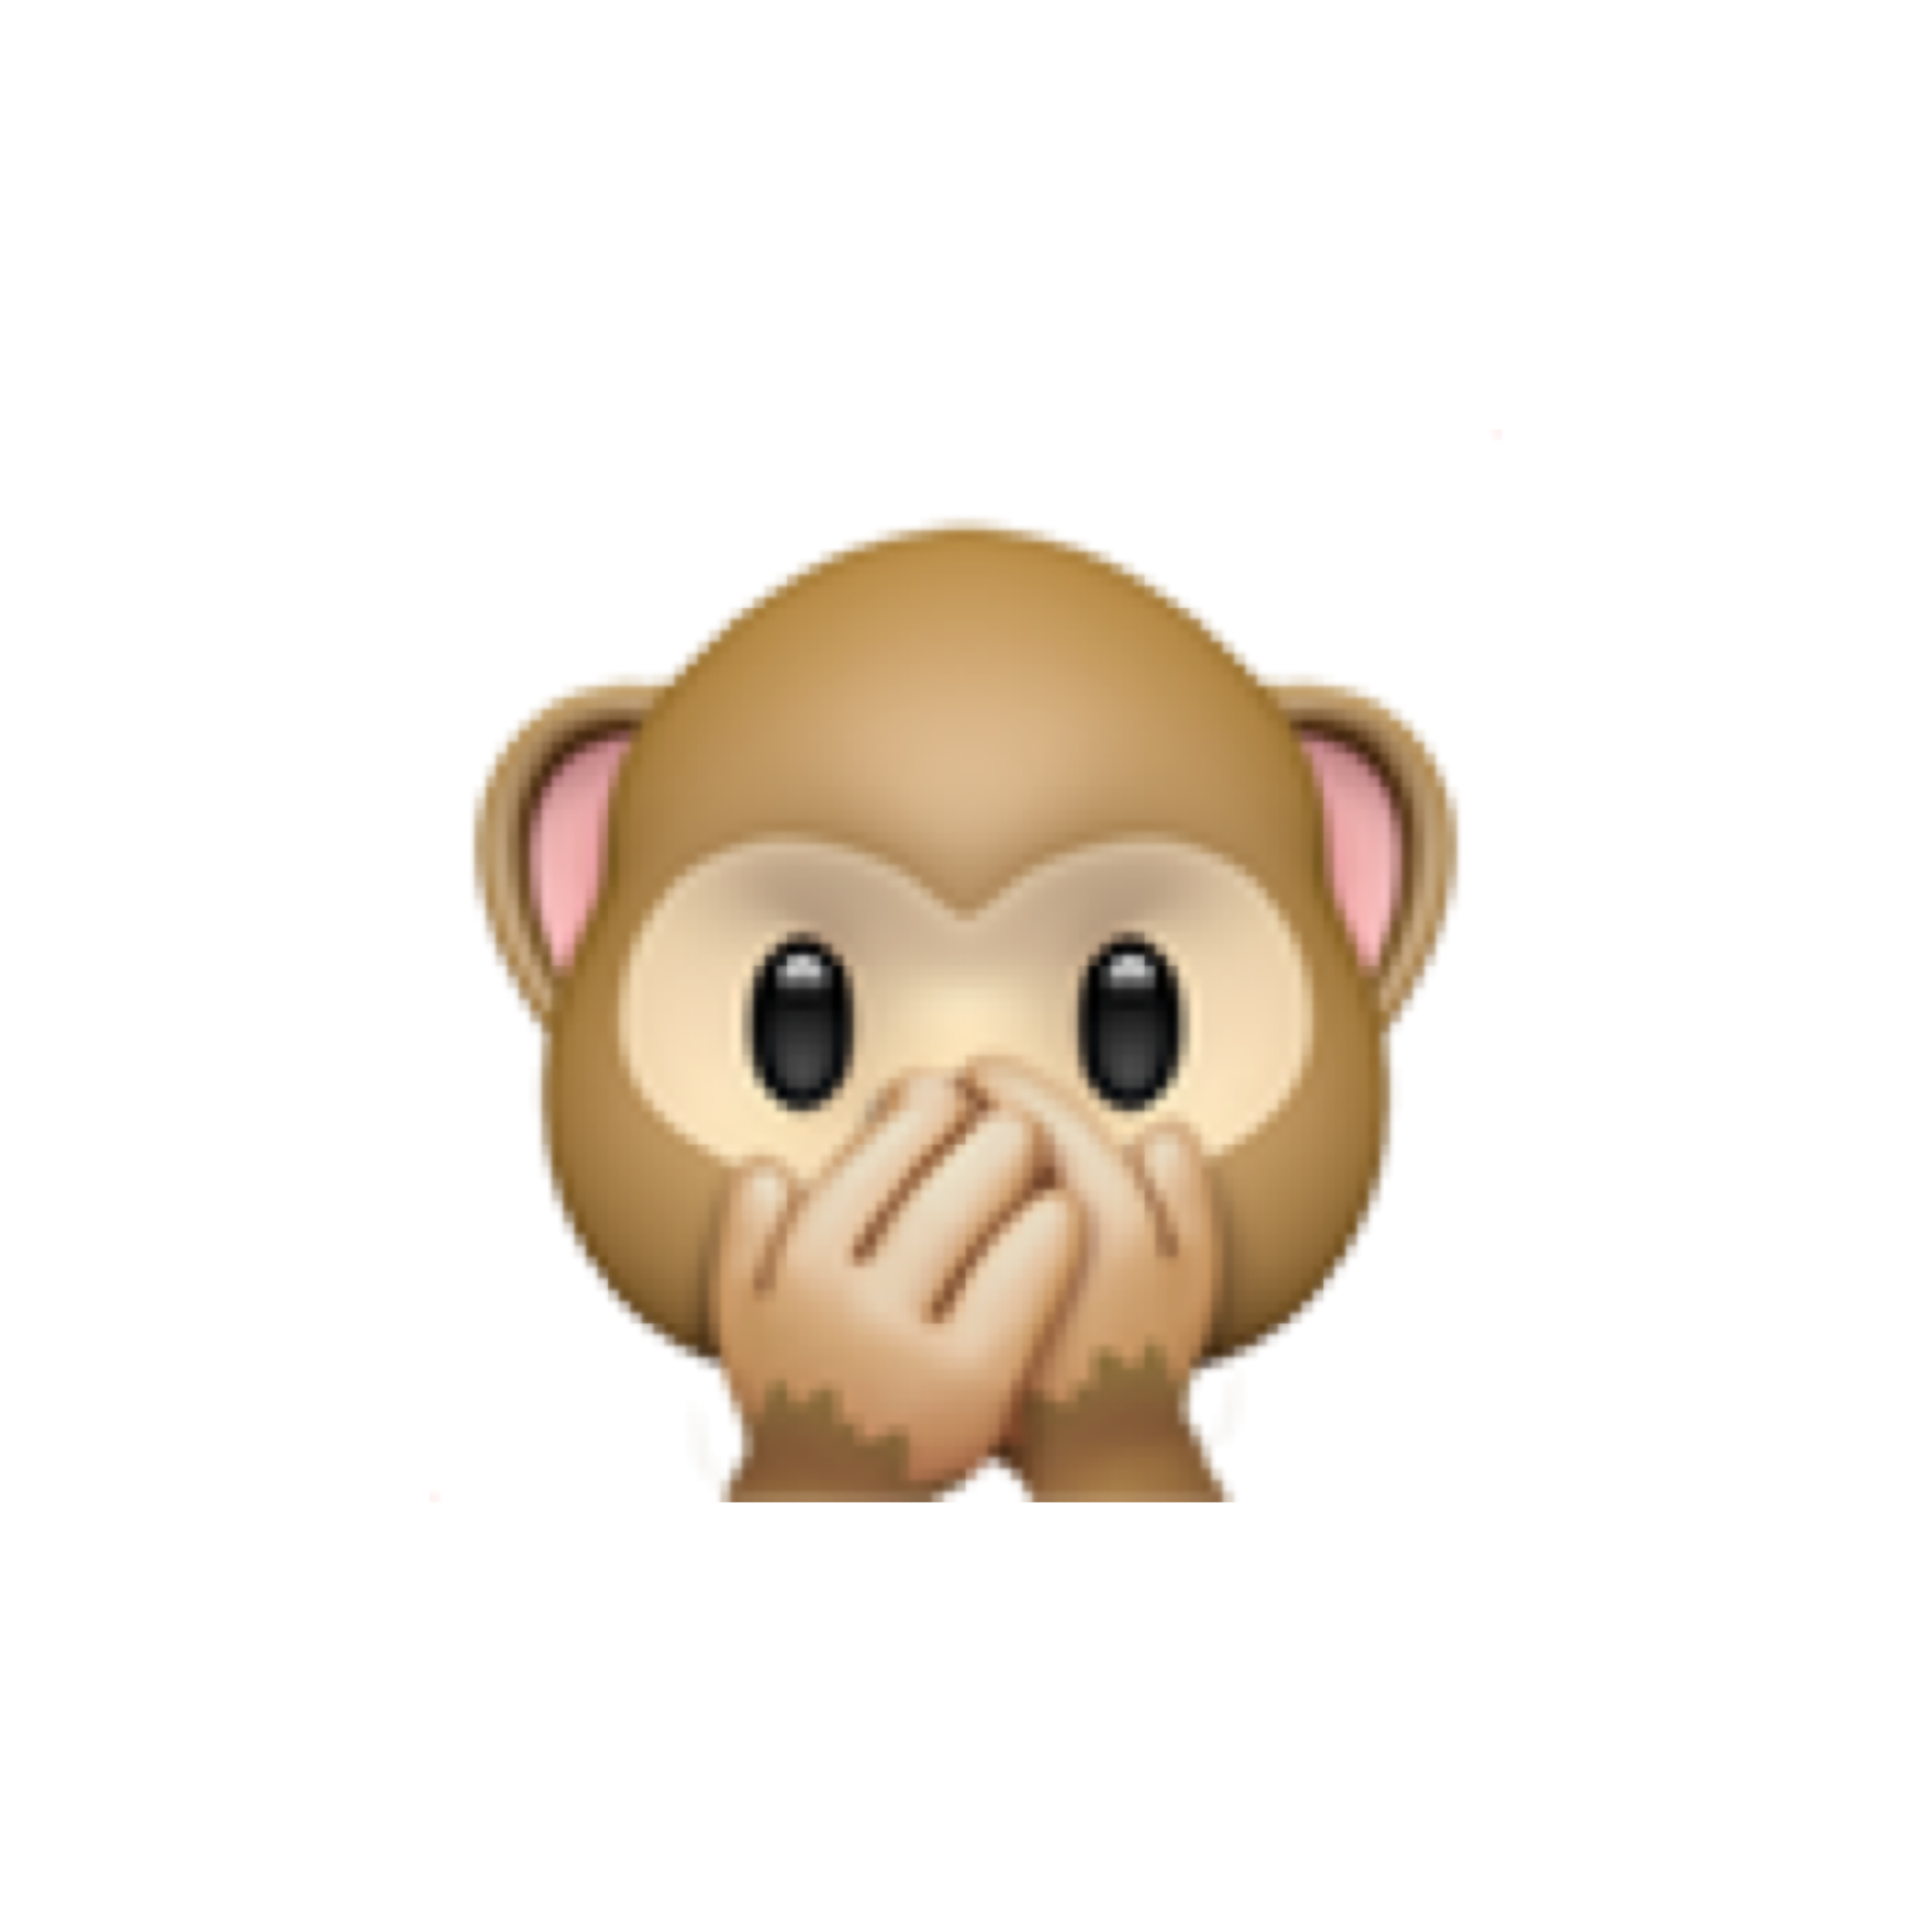 Monkey emoji. Смайлик обезьянка. Смайлик обезьянка с закрытым ртом. Значение смайликов обезьянок. Смайлик обезьянки закрывает глаза уши рот.